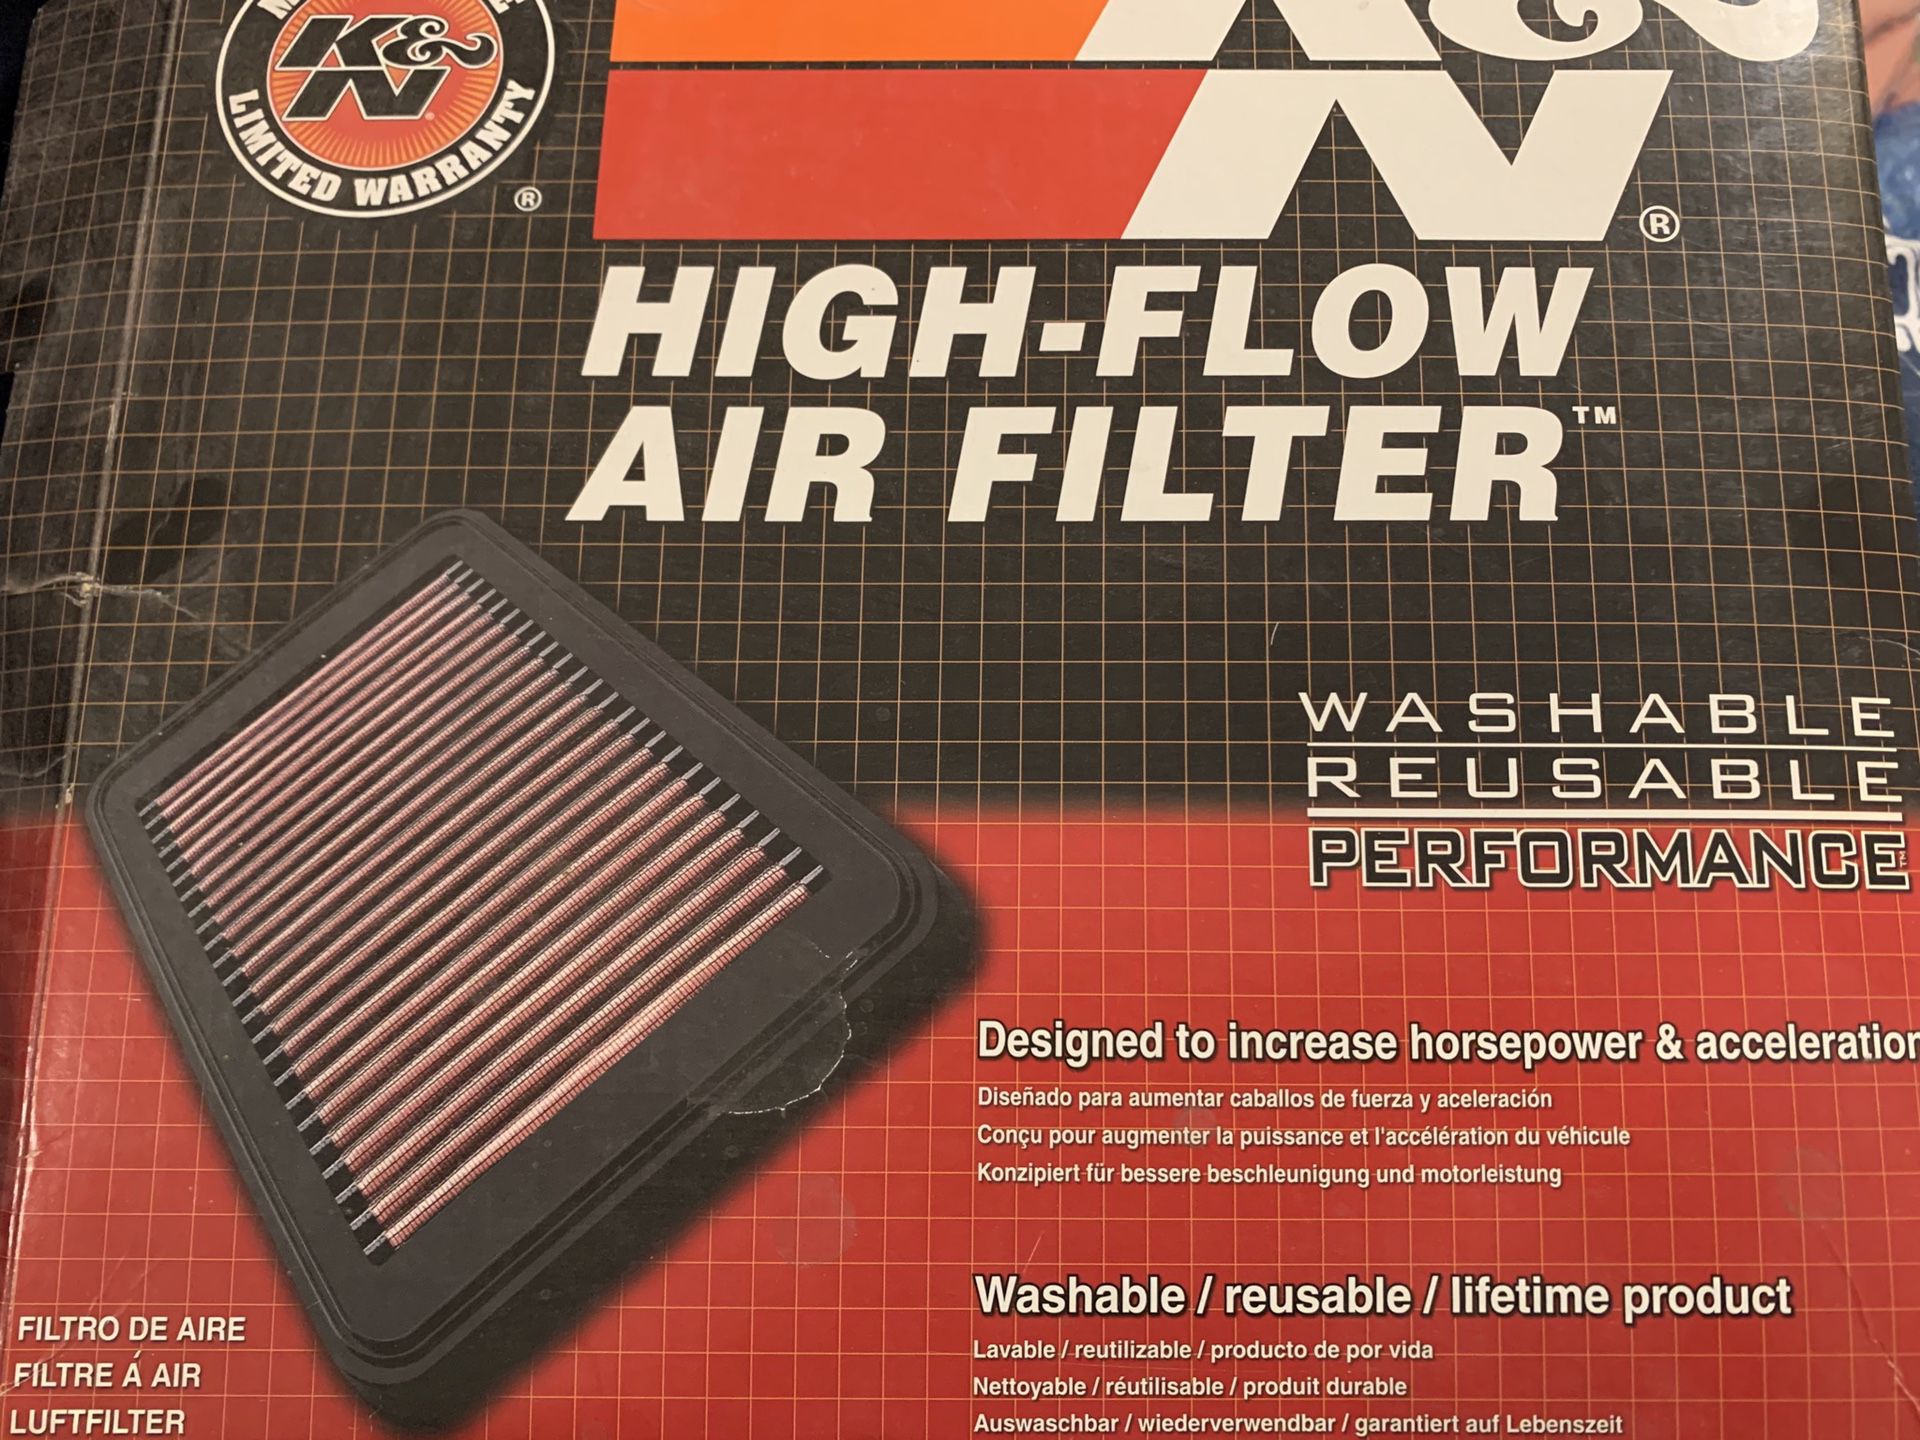 K&N High Flow Air Filter, for Mazda, part number 33-229